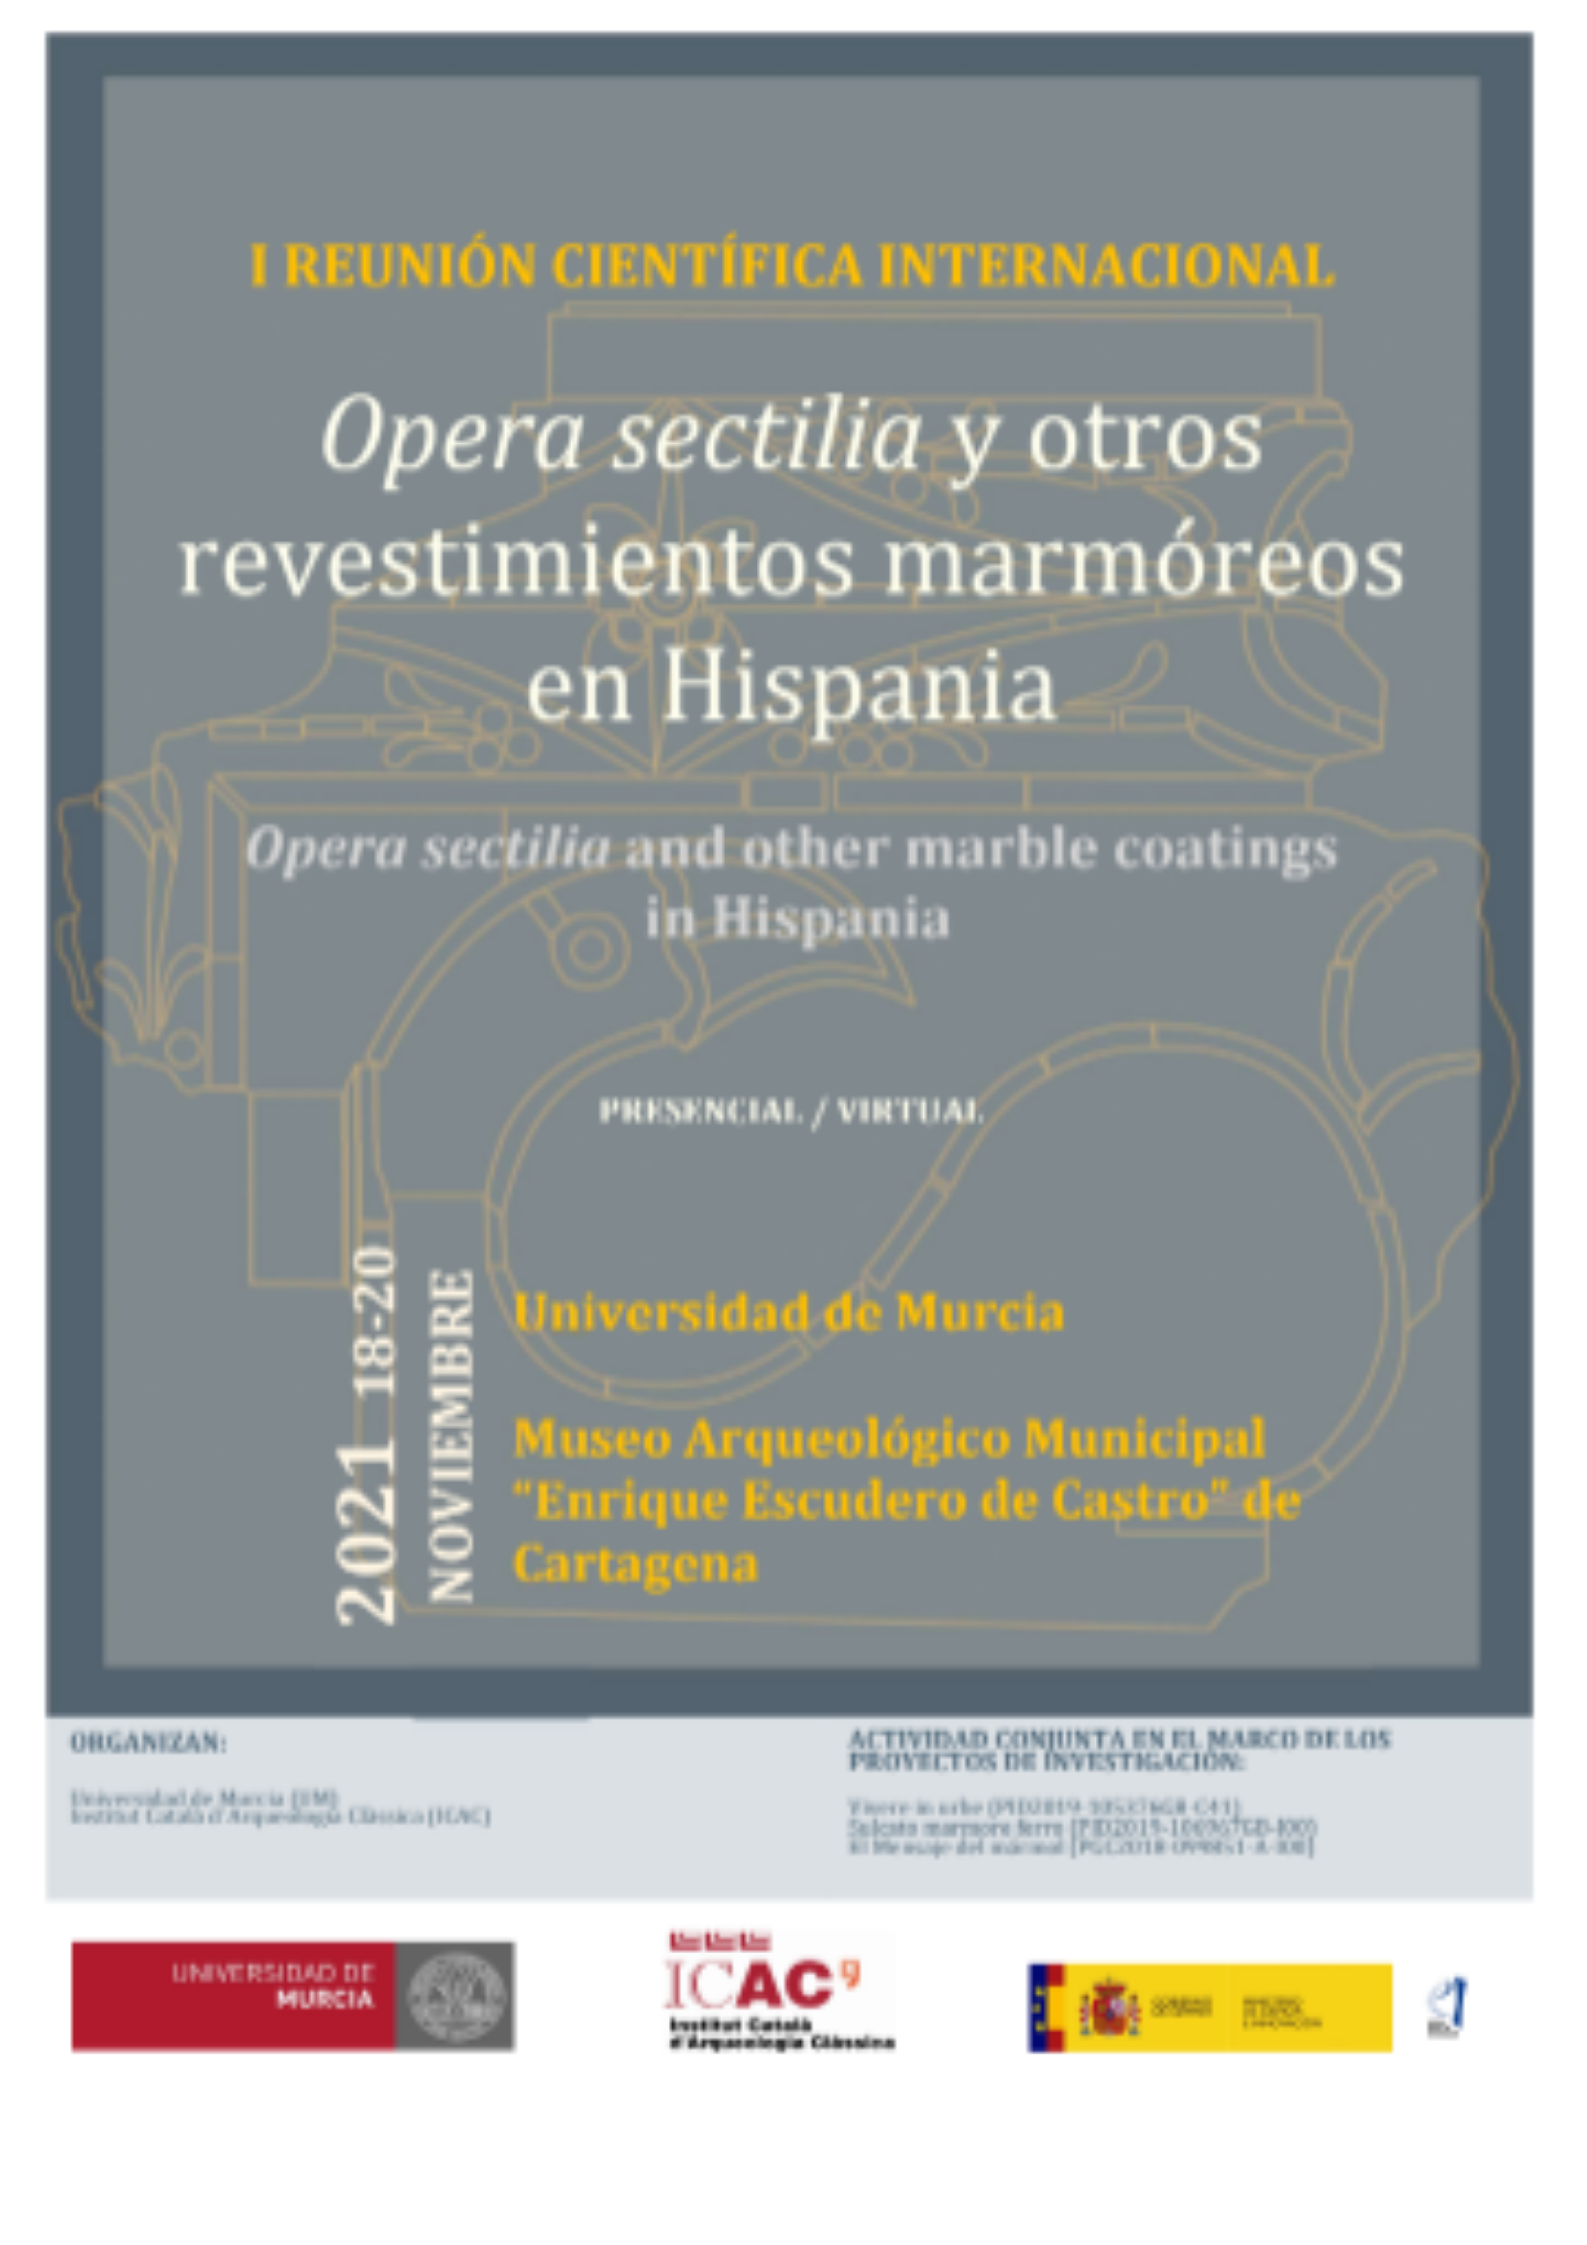 La UMU organiza la reunión científica Opera sectilia y otros revestimientos marmóreos en Hispania